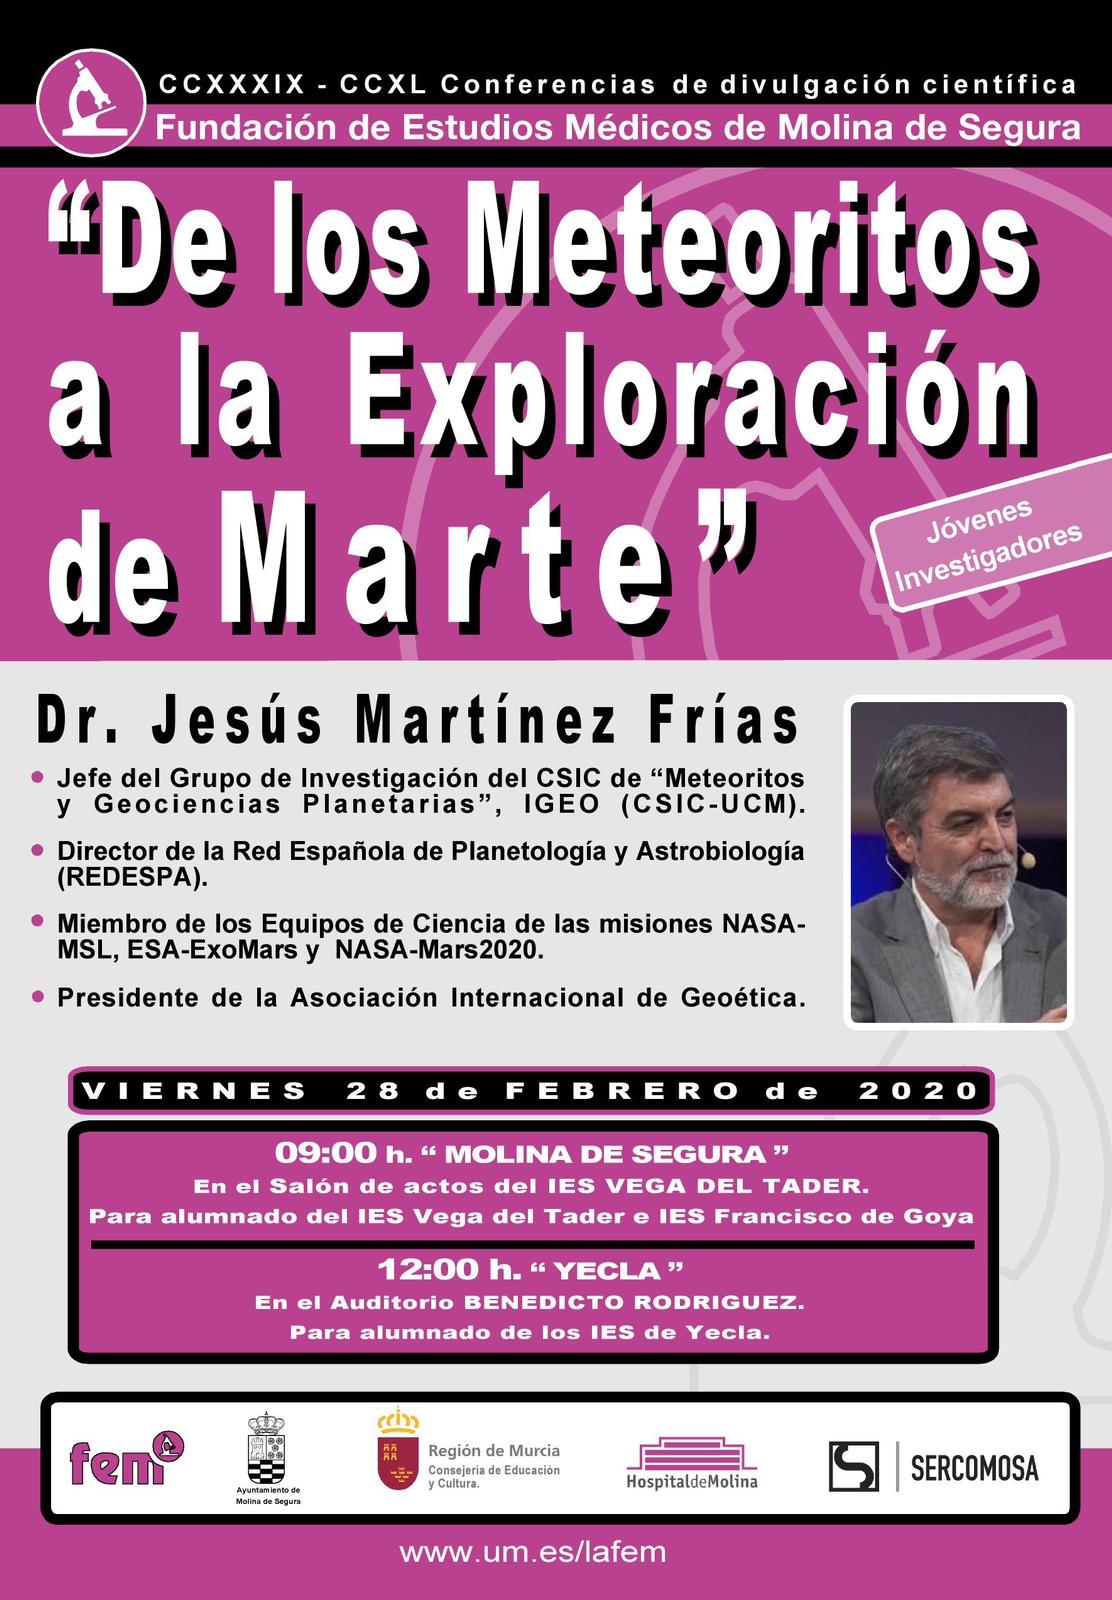 FEM Molina-Cartel Conferencia 28 febrero 20-Jvenes Investigadores.jpg